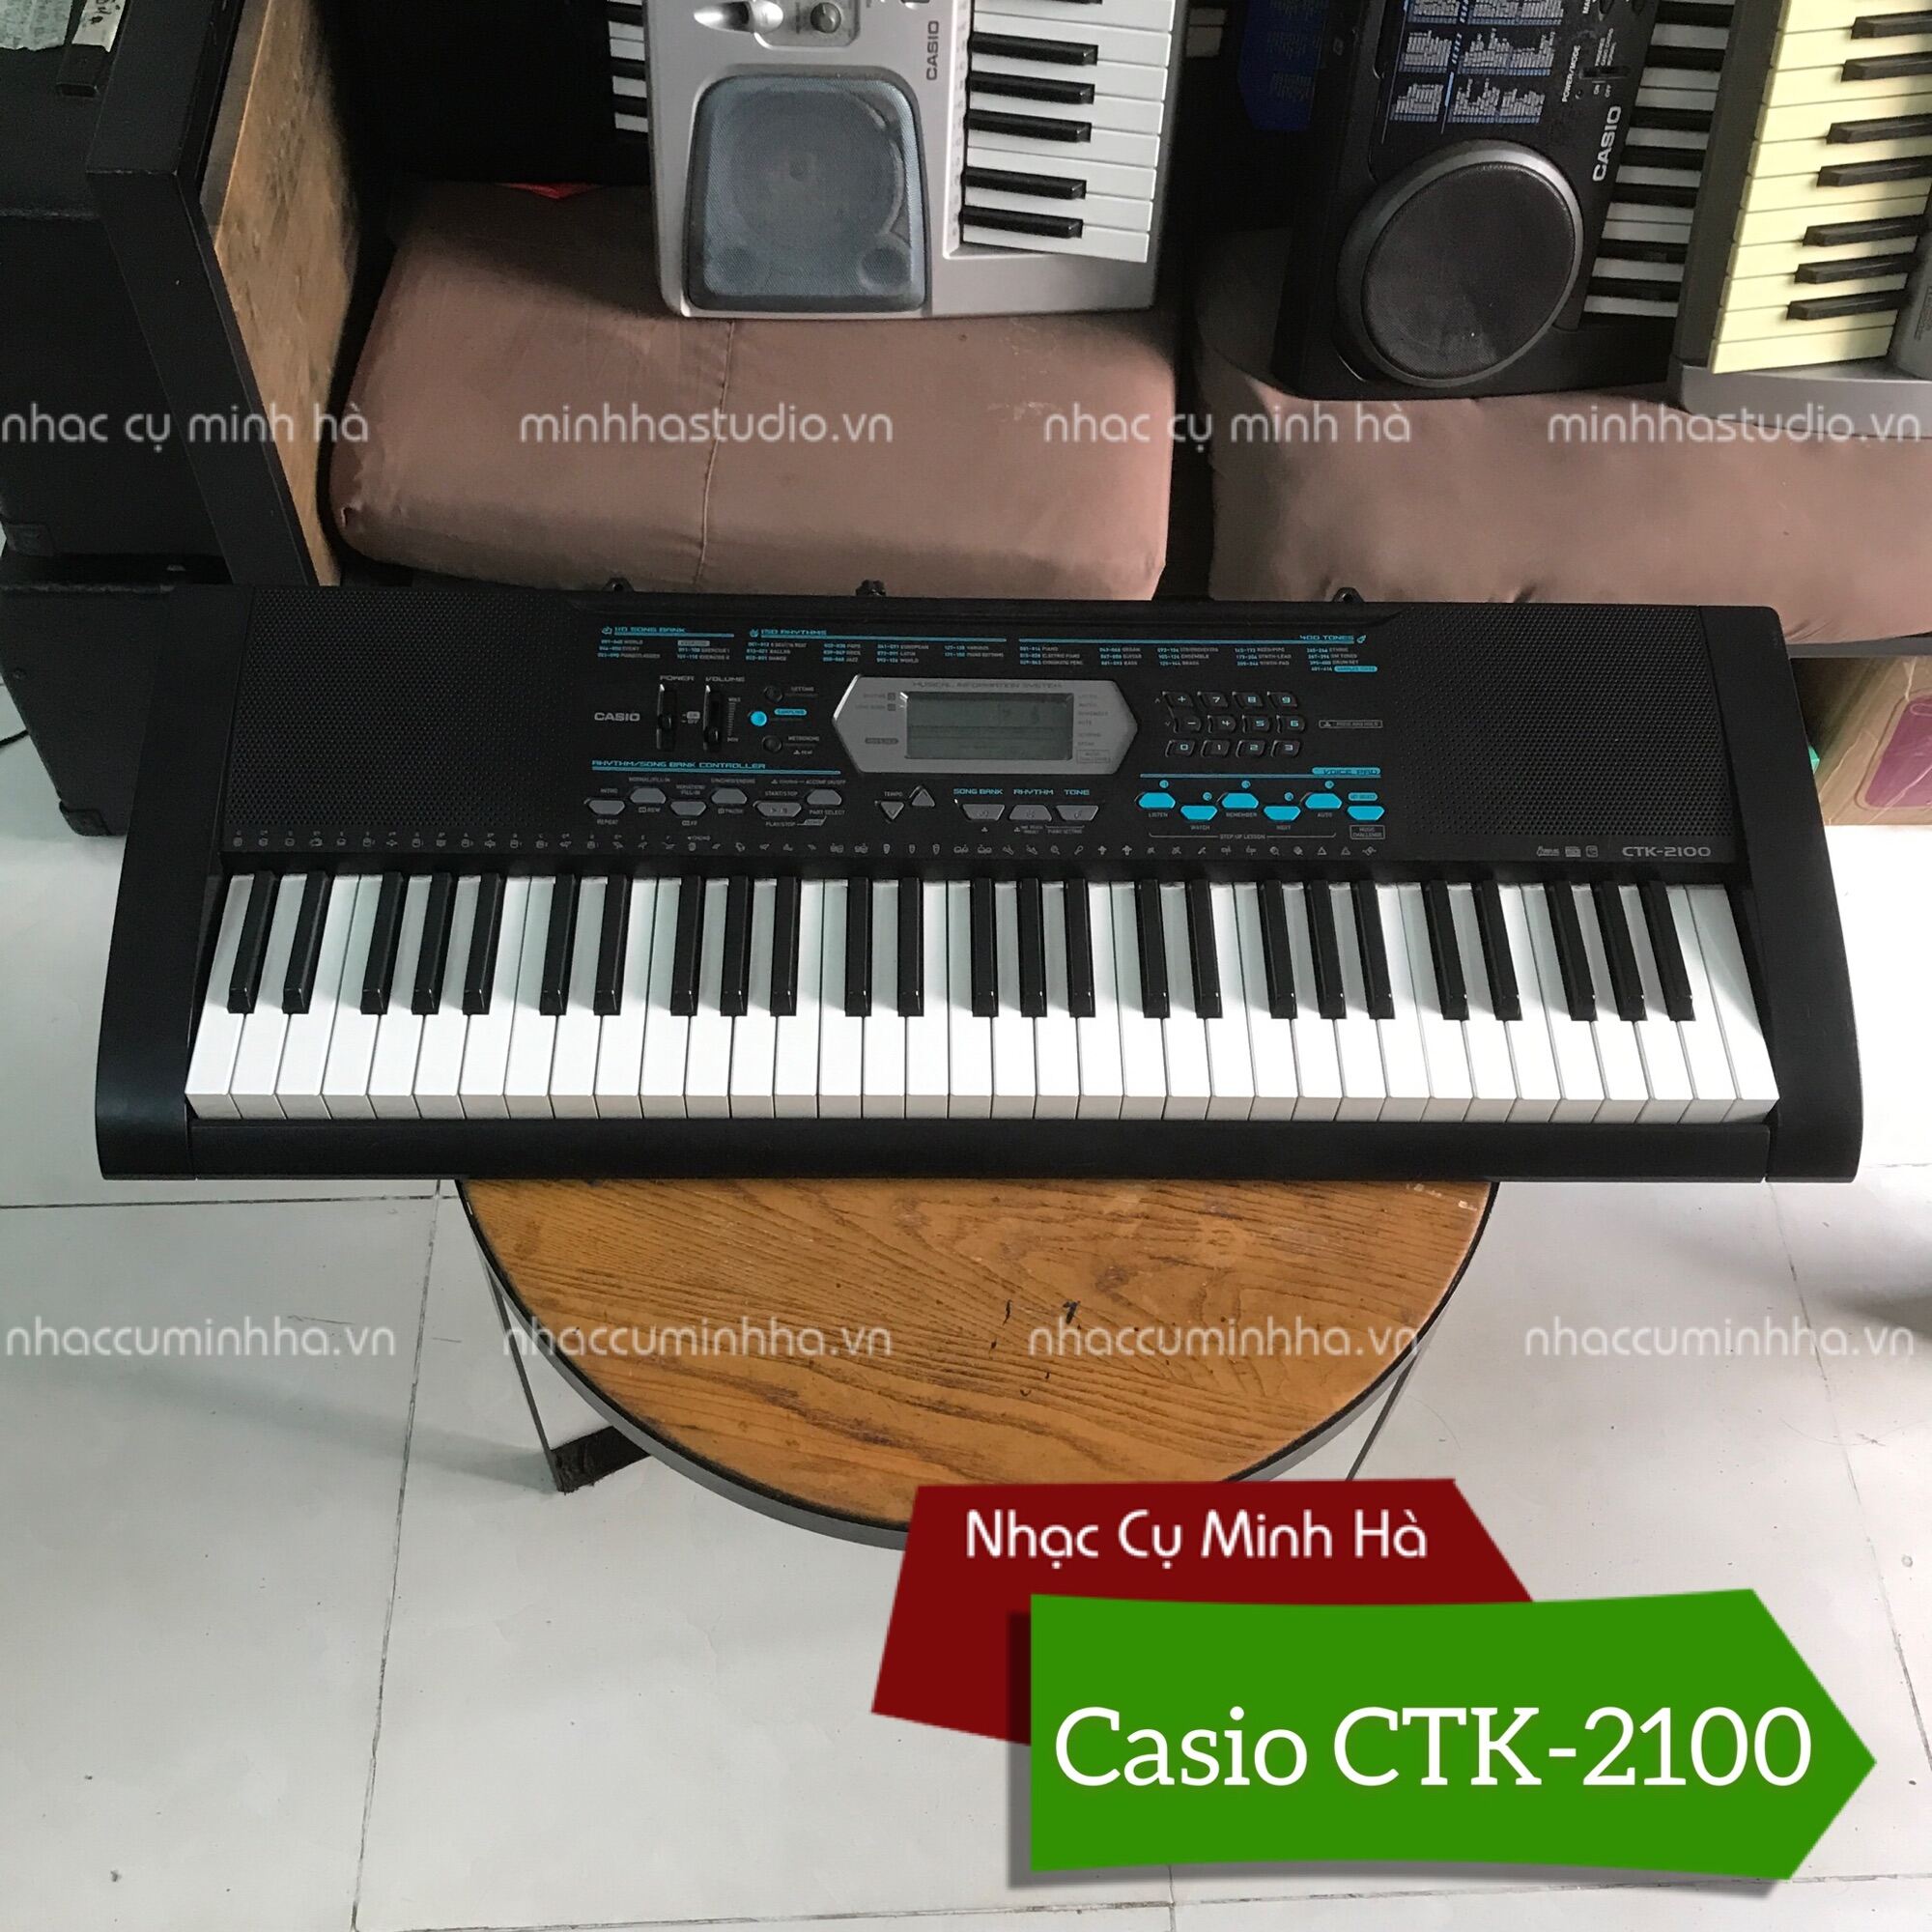 Đàn Organ Casio CTK-2100 cao cấp 61 phím cảm ứng, 400 tiếng, 150 điệu, âm thanh tuyệt hay